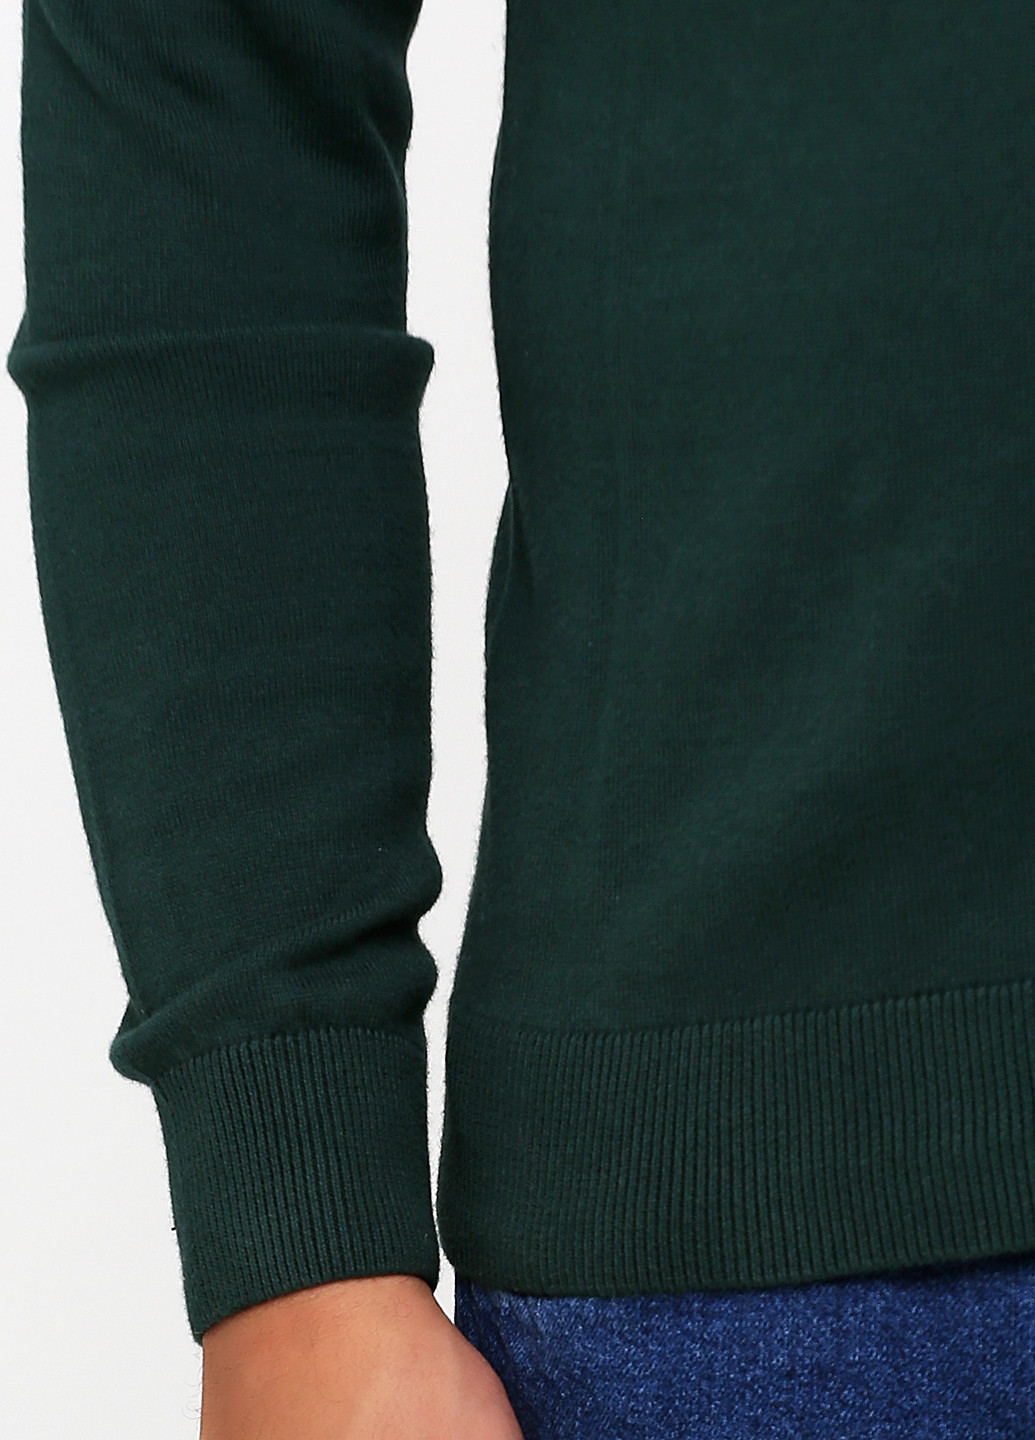 Зеленый демисезонный пуловер пуловер C&A